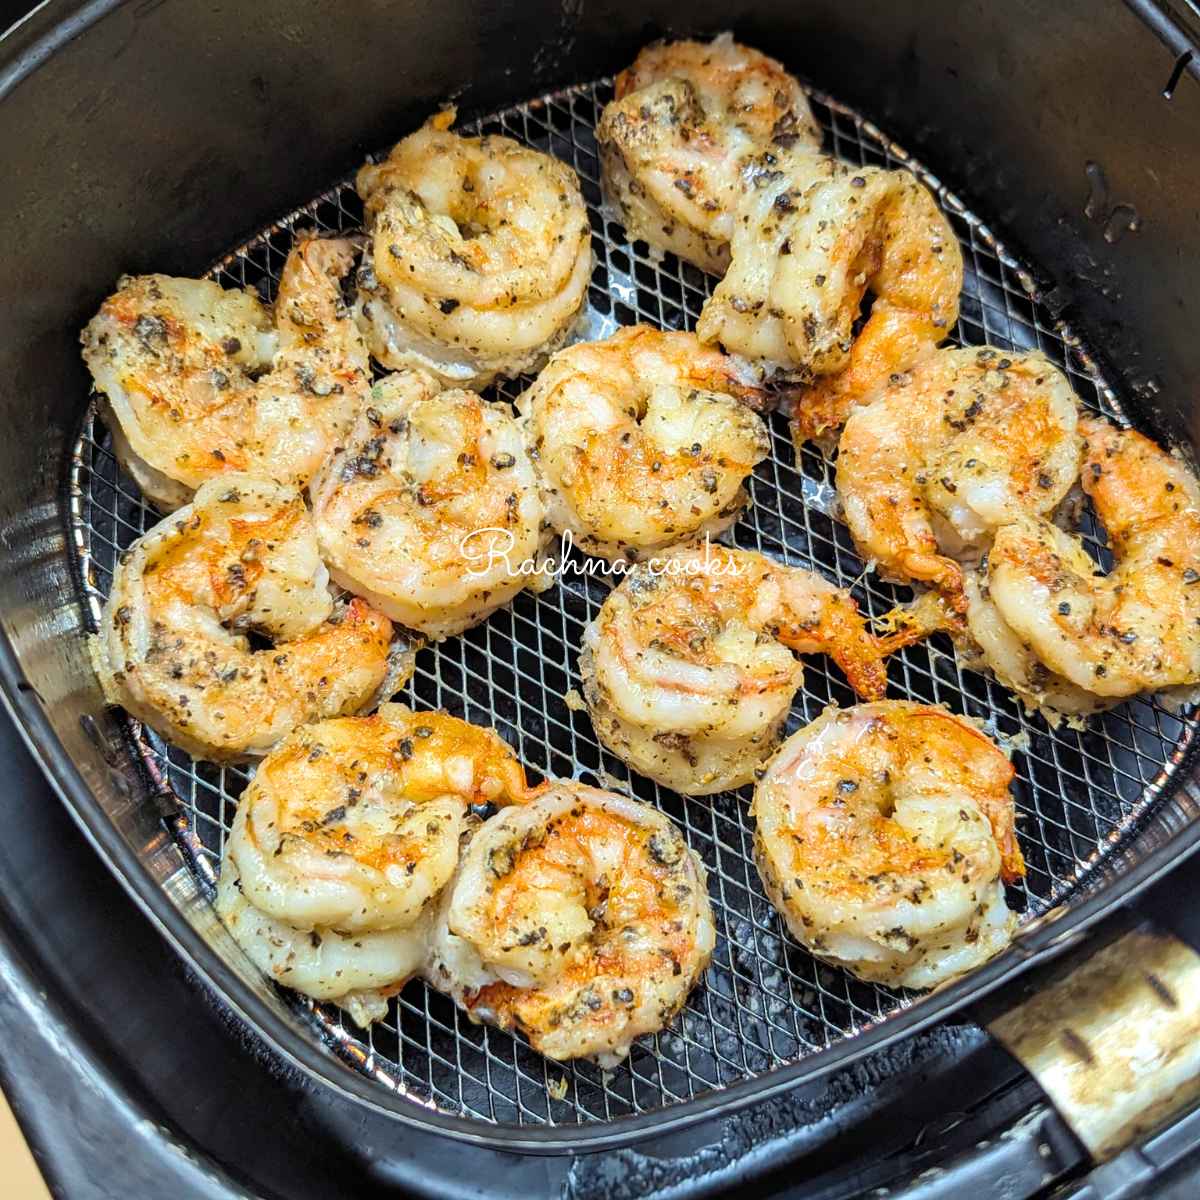 Crunchy salt and pepper shrimp in air fryer basket after air frying.